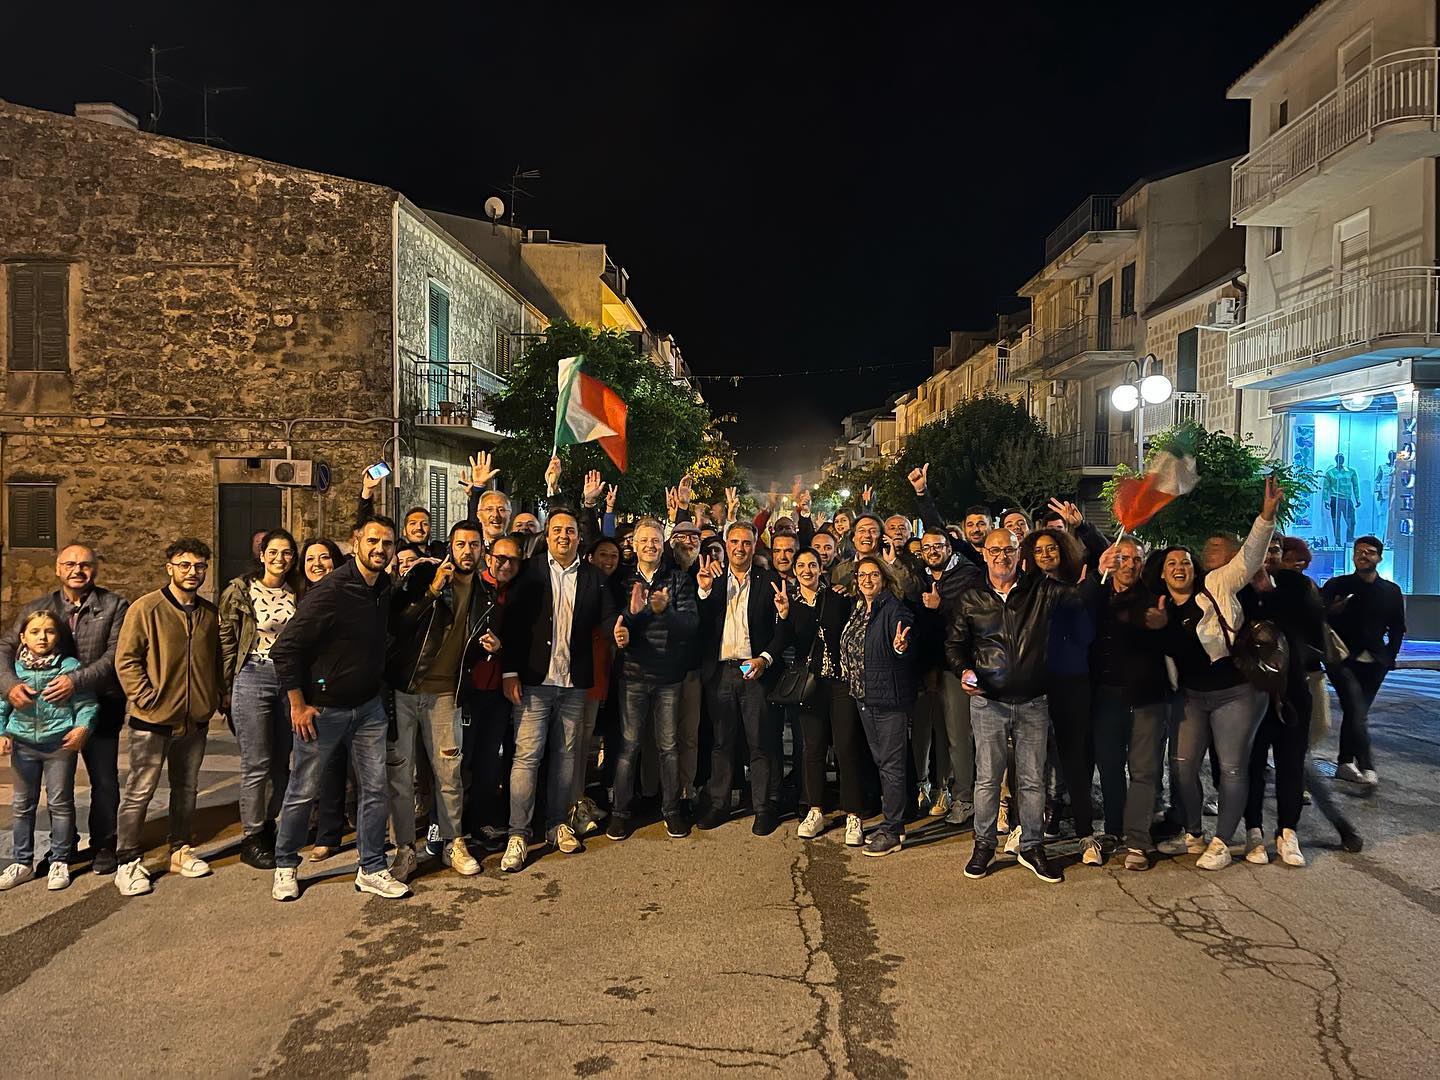 Mussomeli, L’elezione del deputato regionale Giuseppe Catania: l’attesa,la vittoria e la festa